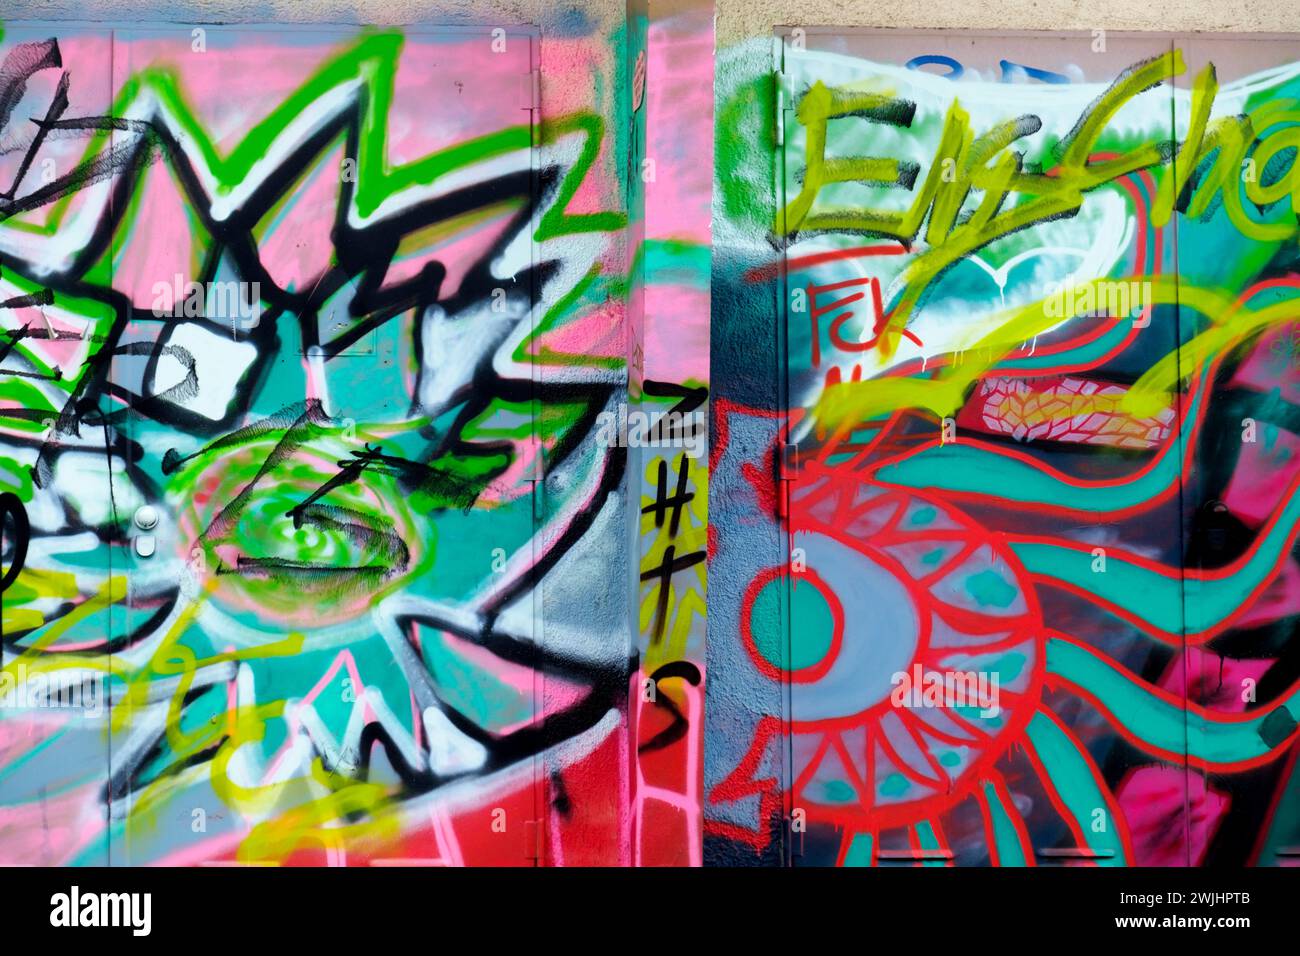 Des graffitis colorés recouvrent deux murs, montrant des formes abstraites et des tags dans un environnement urbain, Rhénanie-Palatinat, Allemagne Banque D'Images